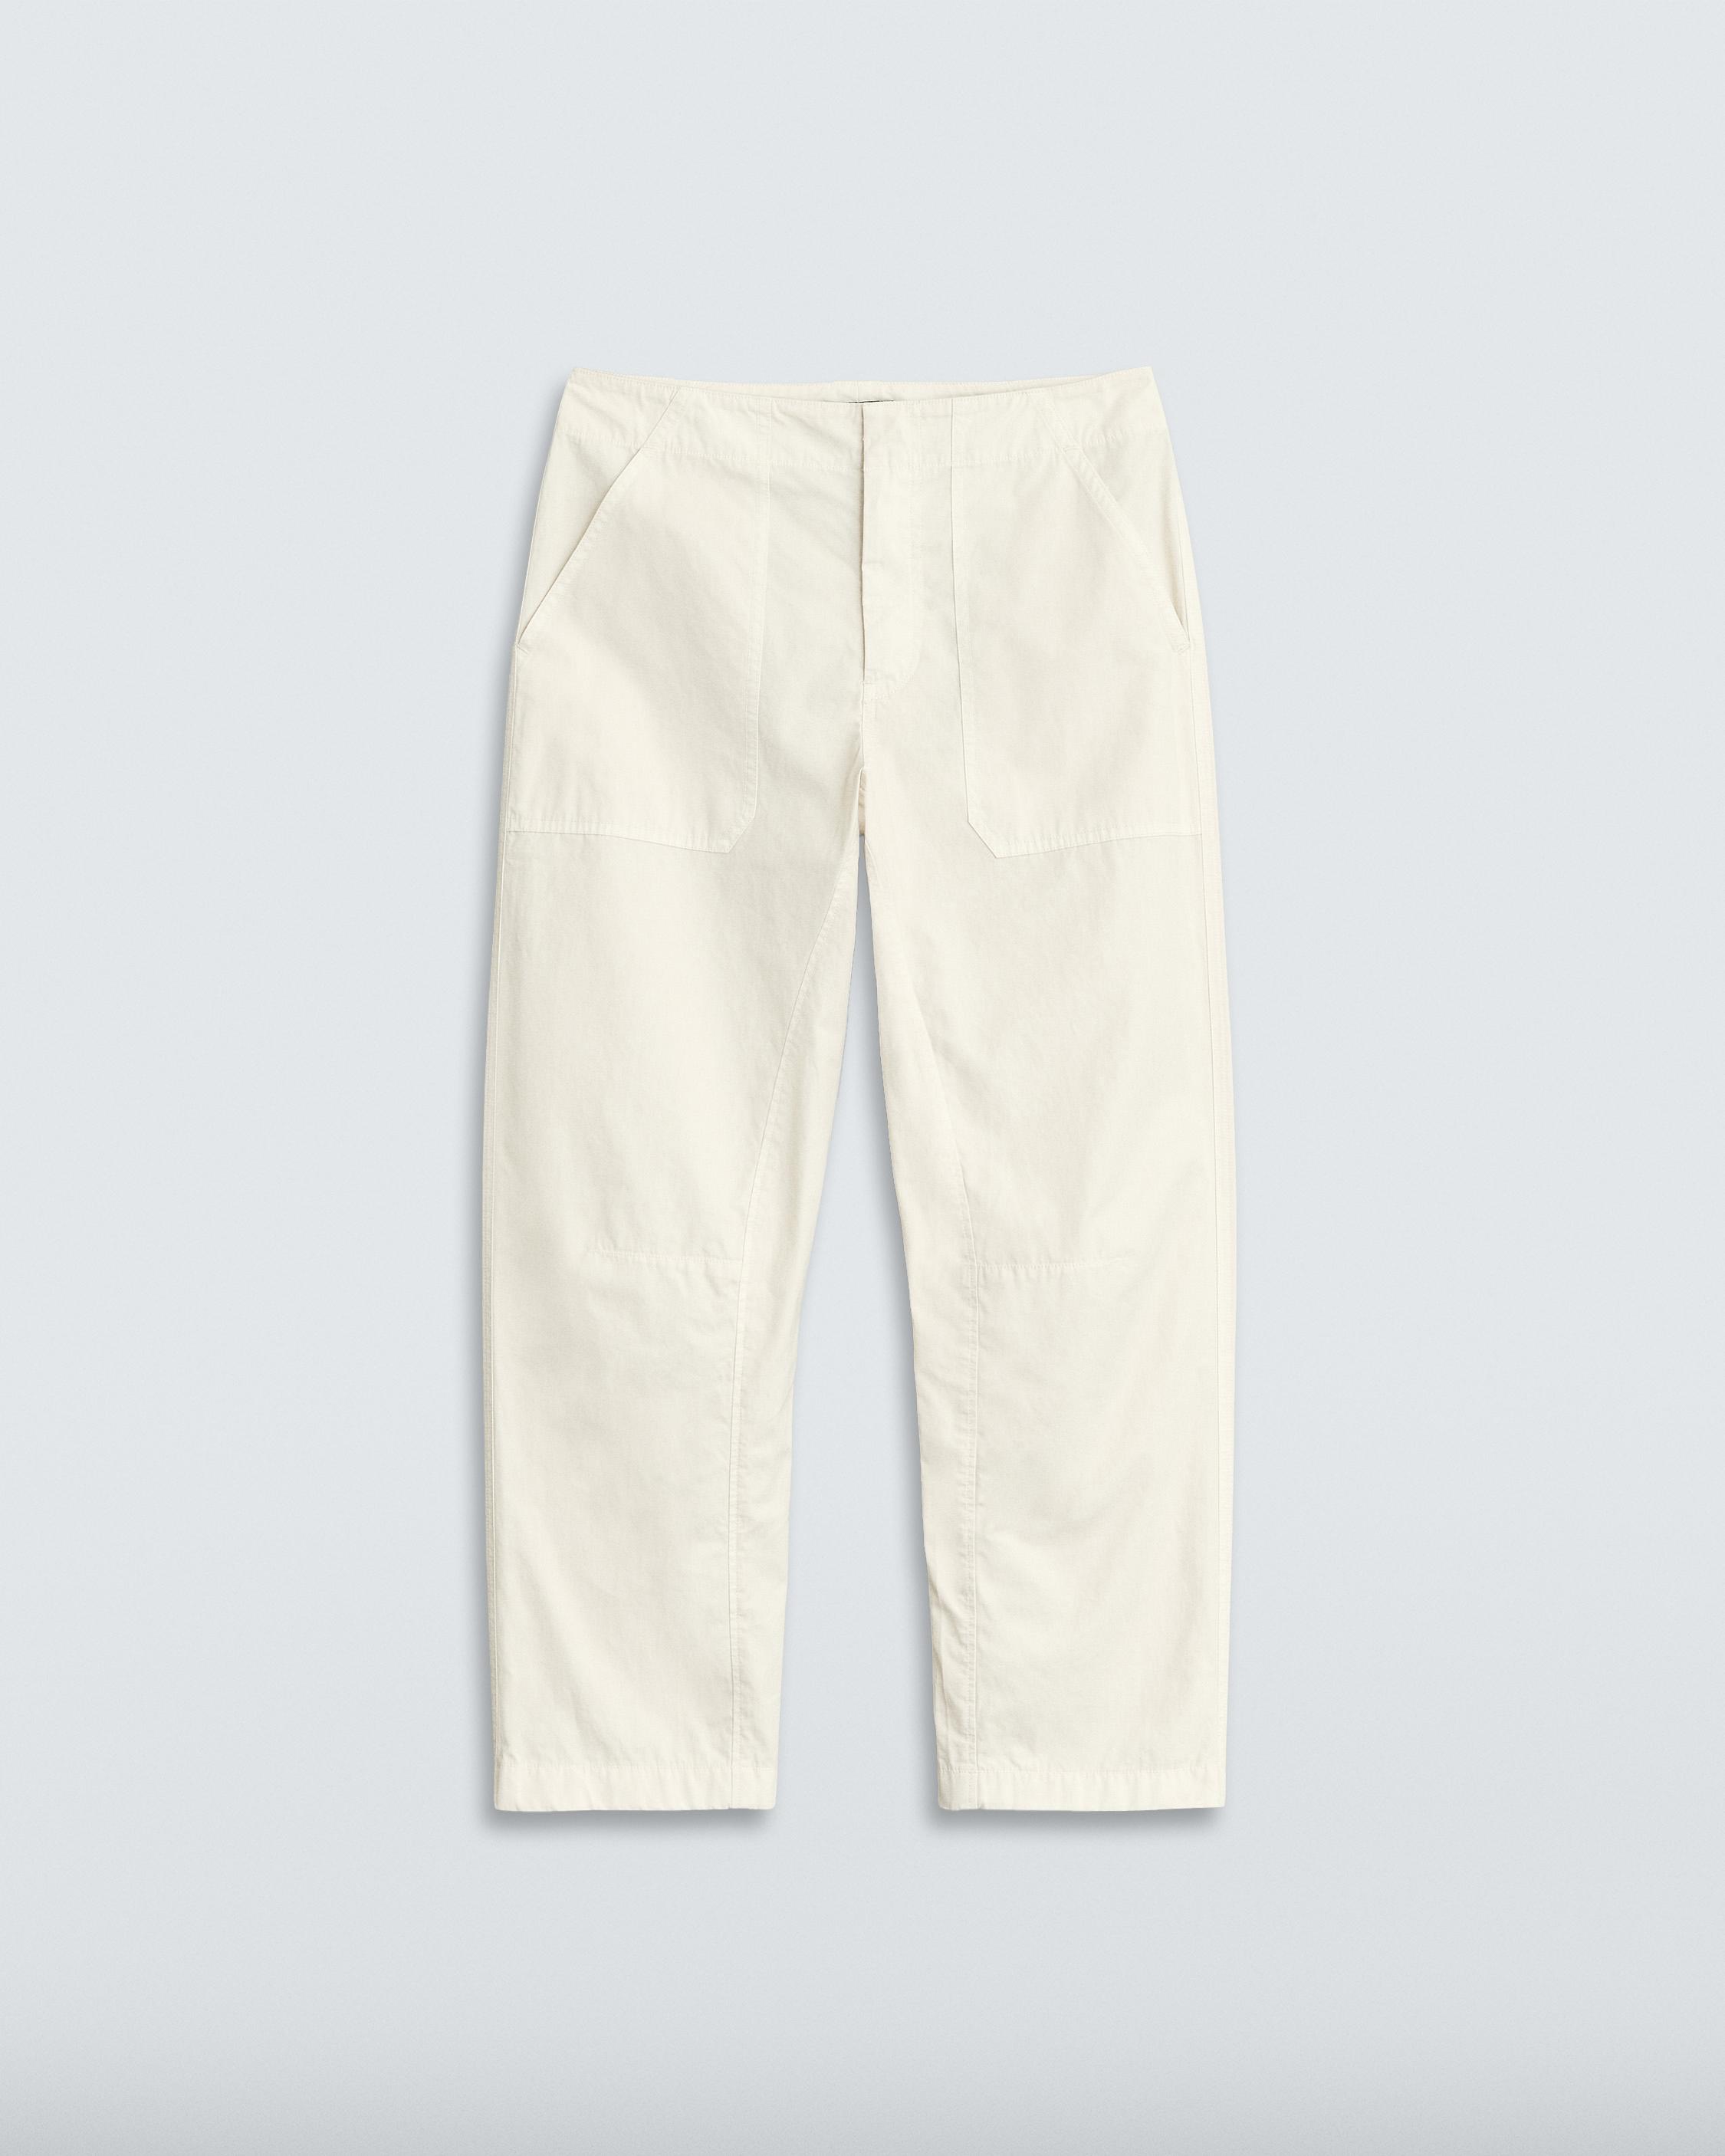 Leyton Workwear Cotton Pant